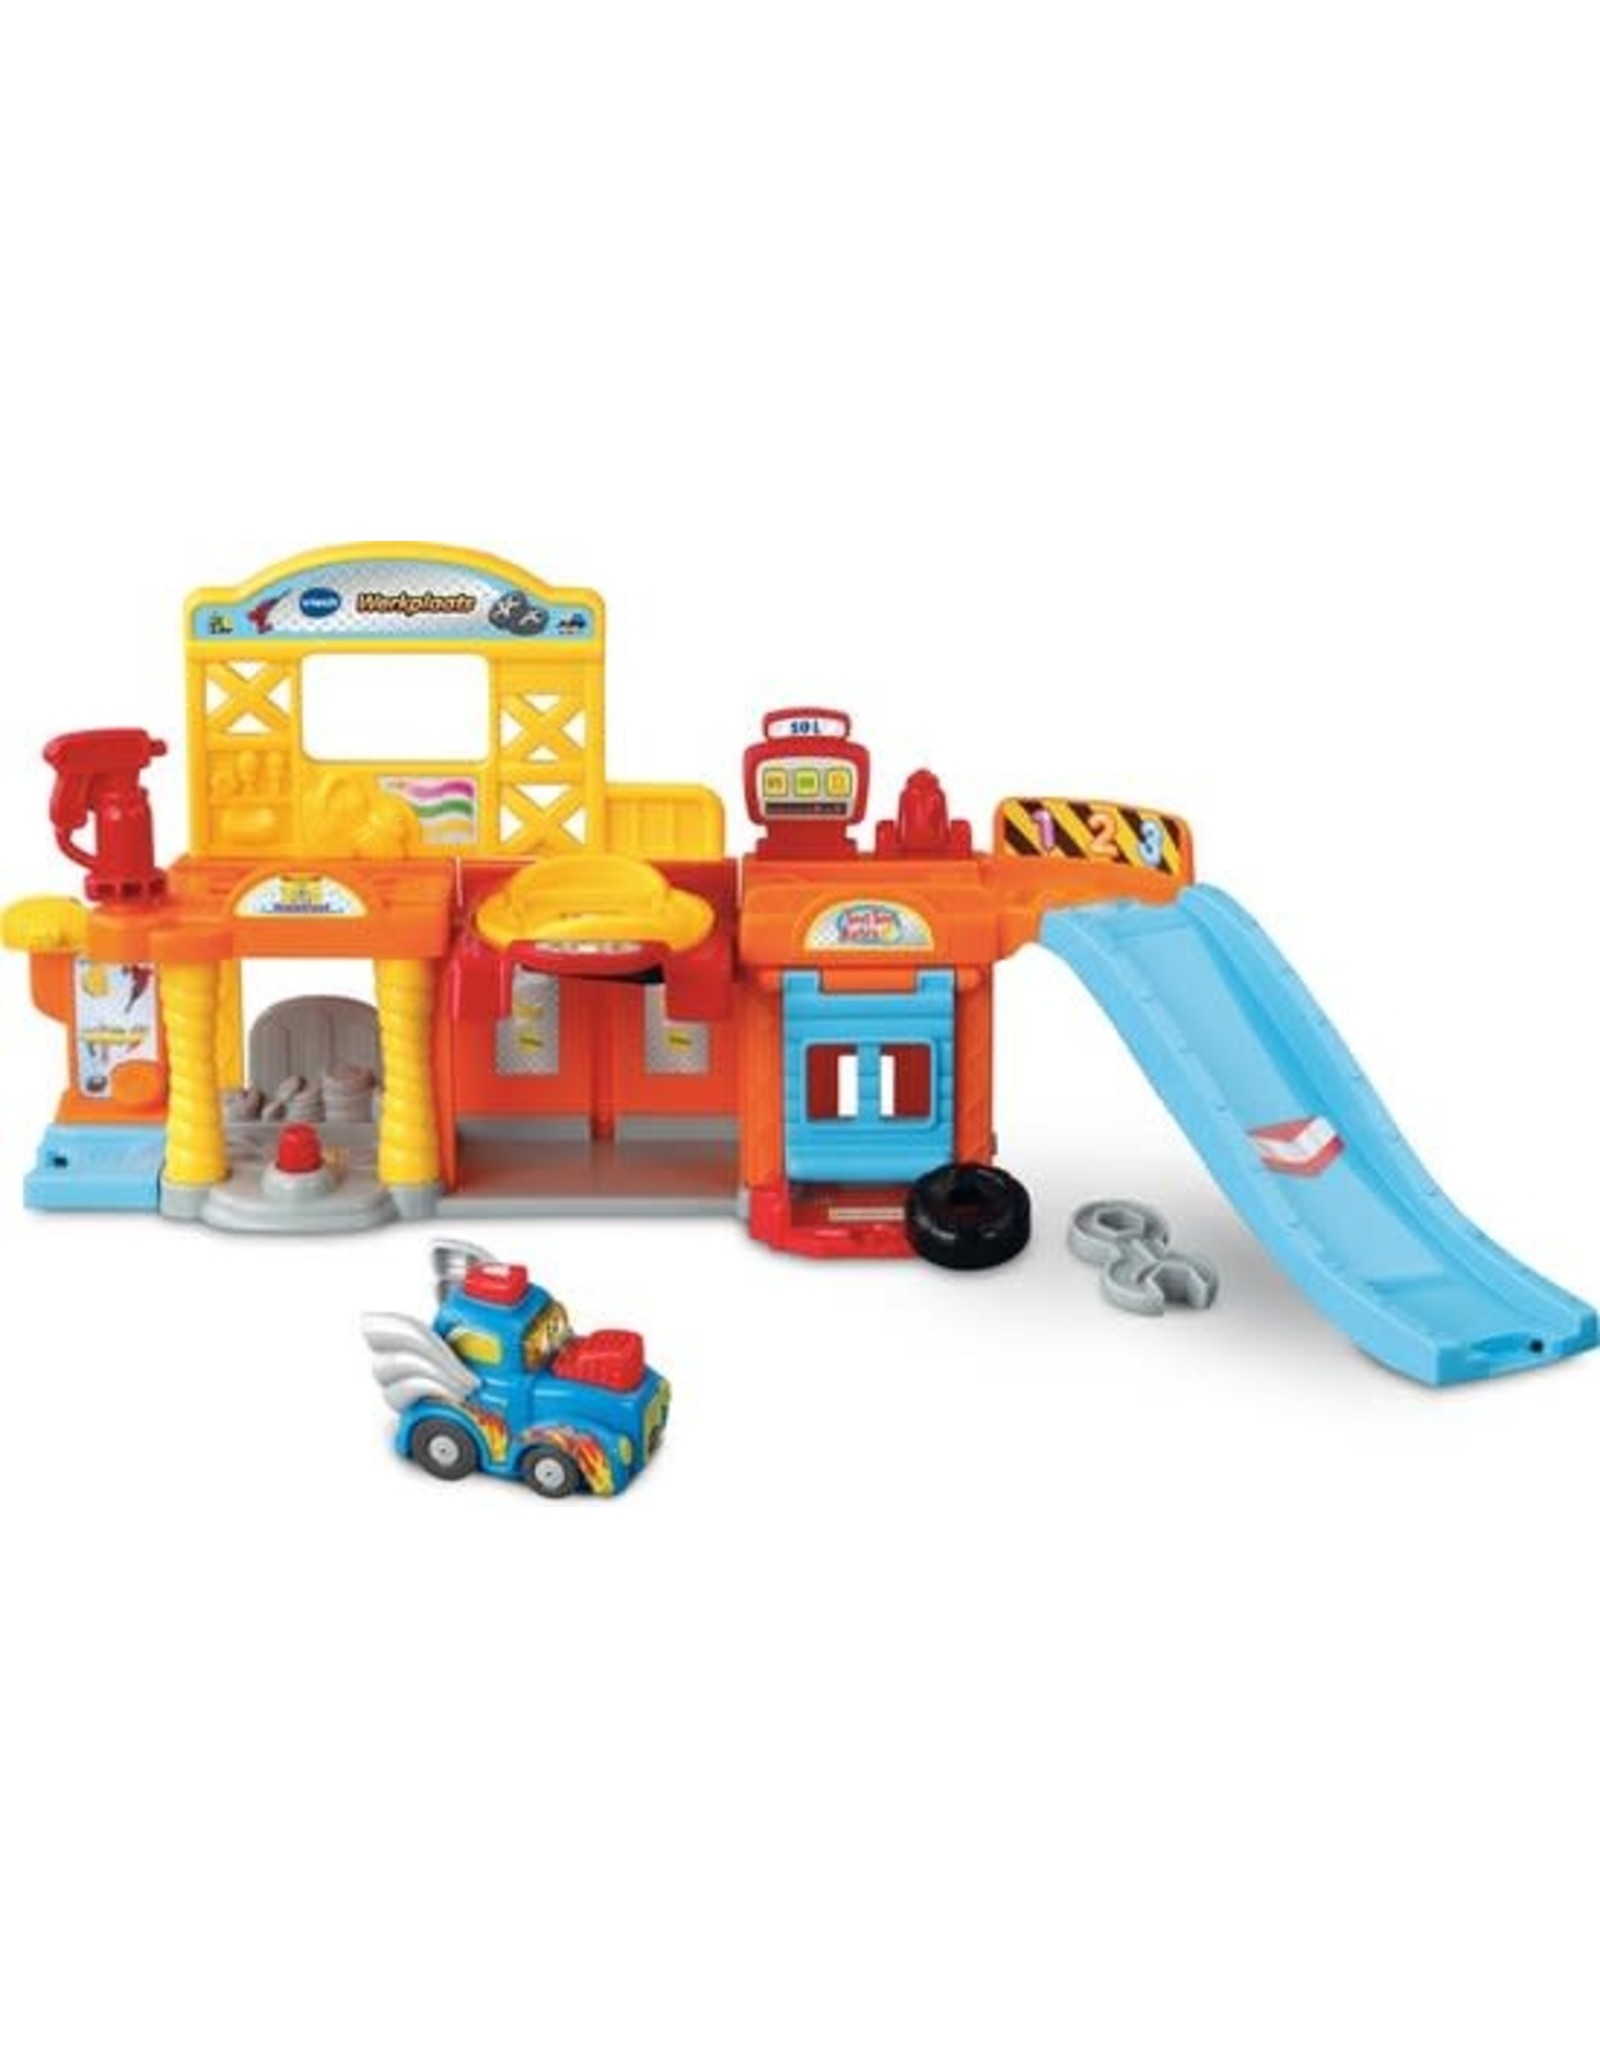 VTECH Vtech Toet Toet Auto's Werkplaats - Interactief Babyspeelgoed